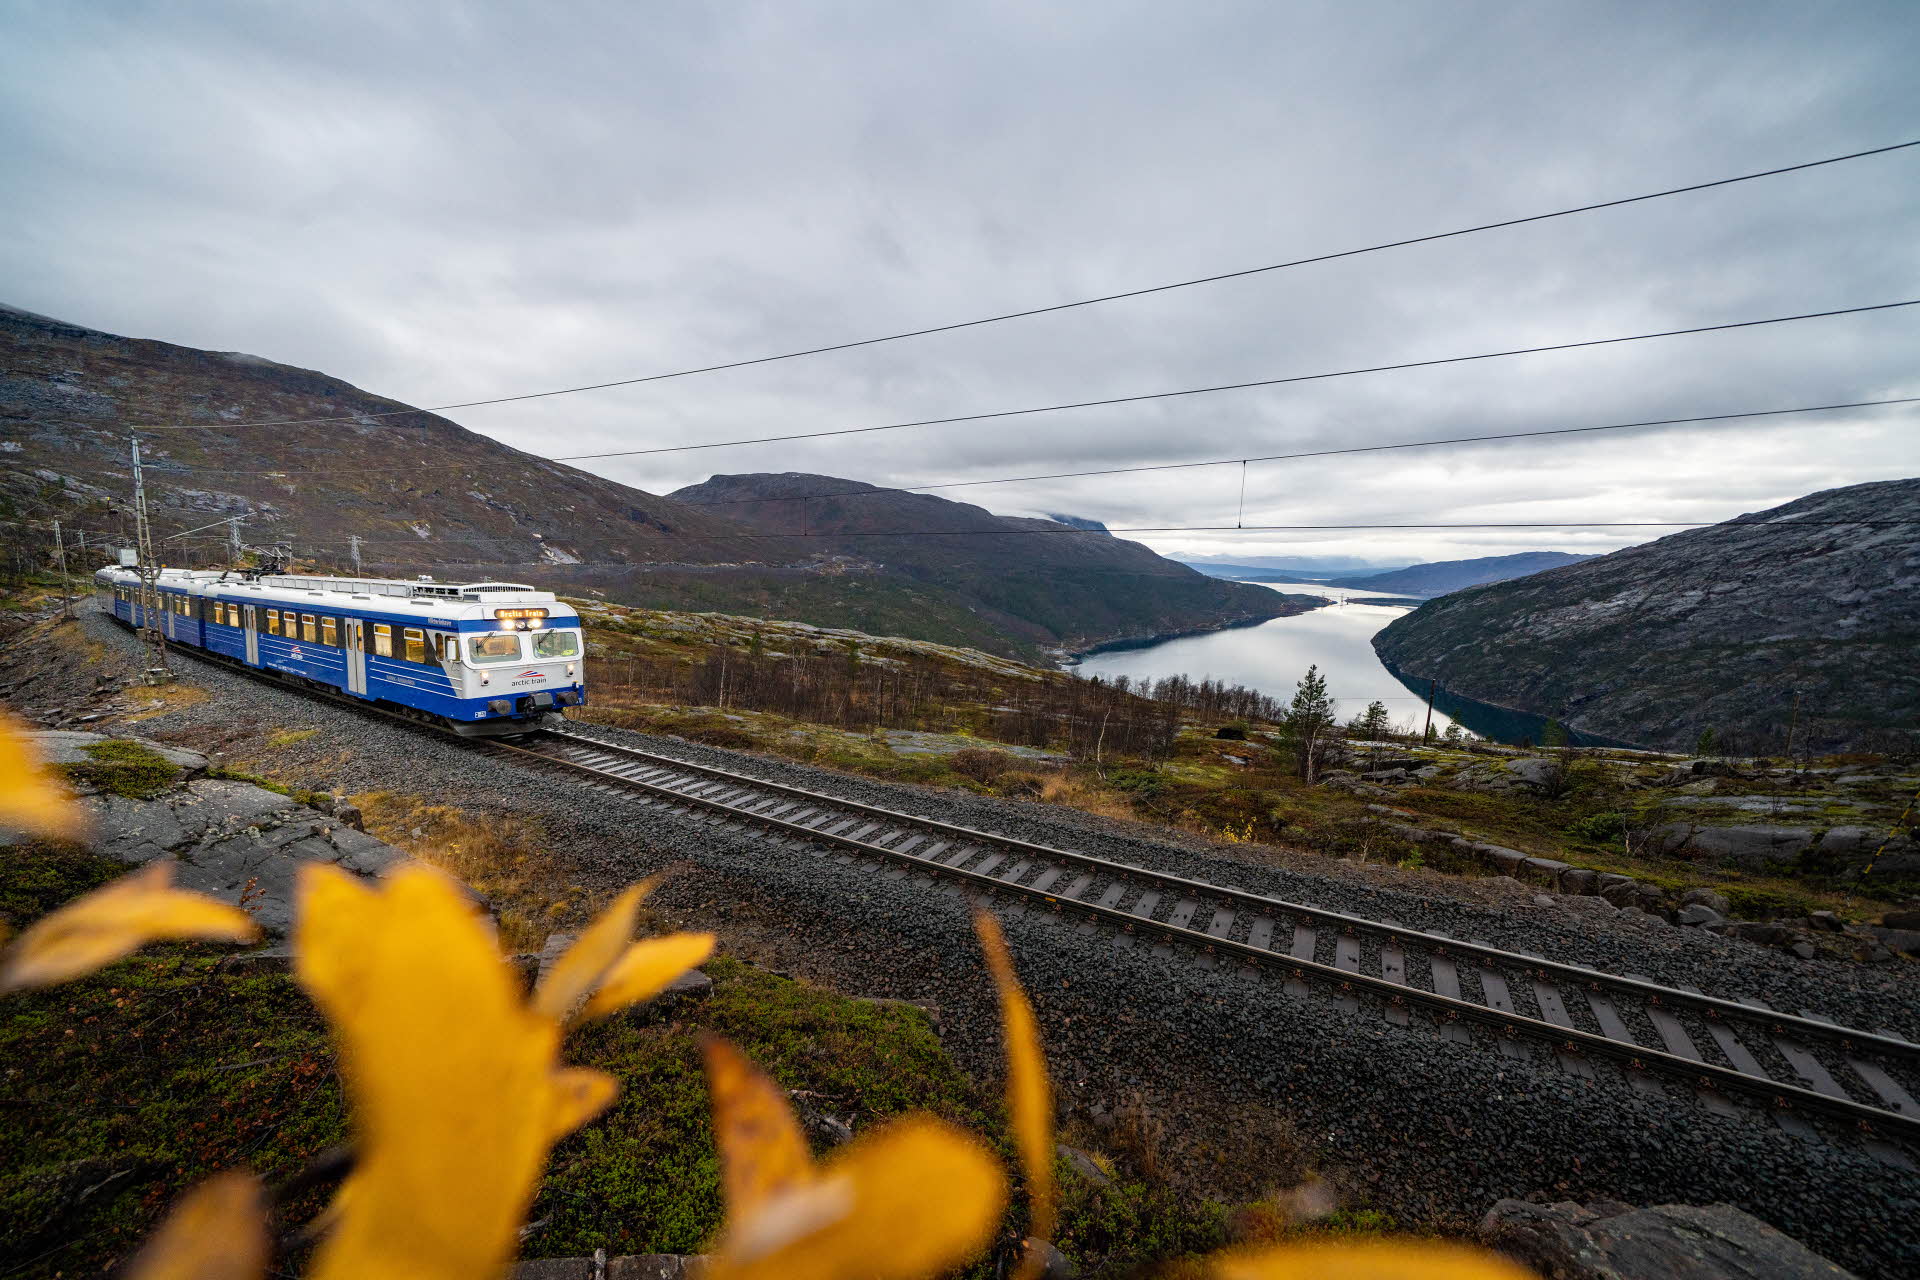 蓝色的北极列车行驶在轨道上。背景是罗姆巴肯 (Rombakken)，迎面而来的是大片黄叶。 